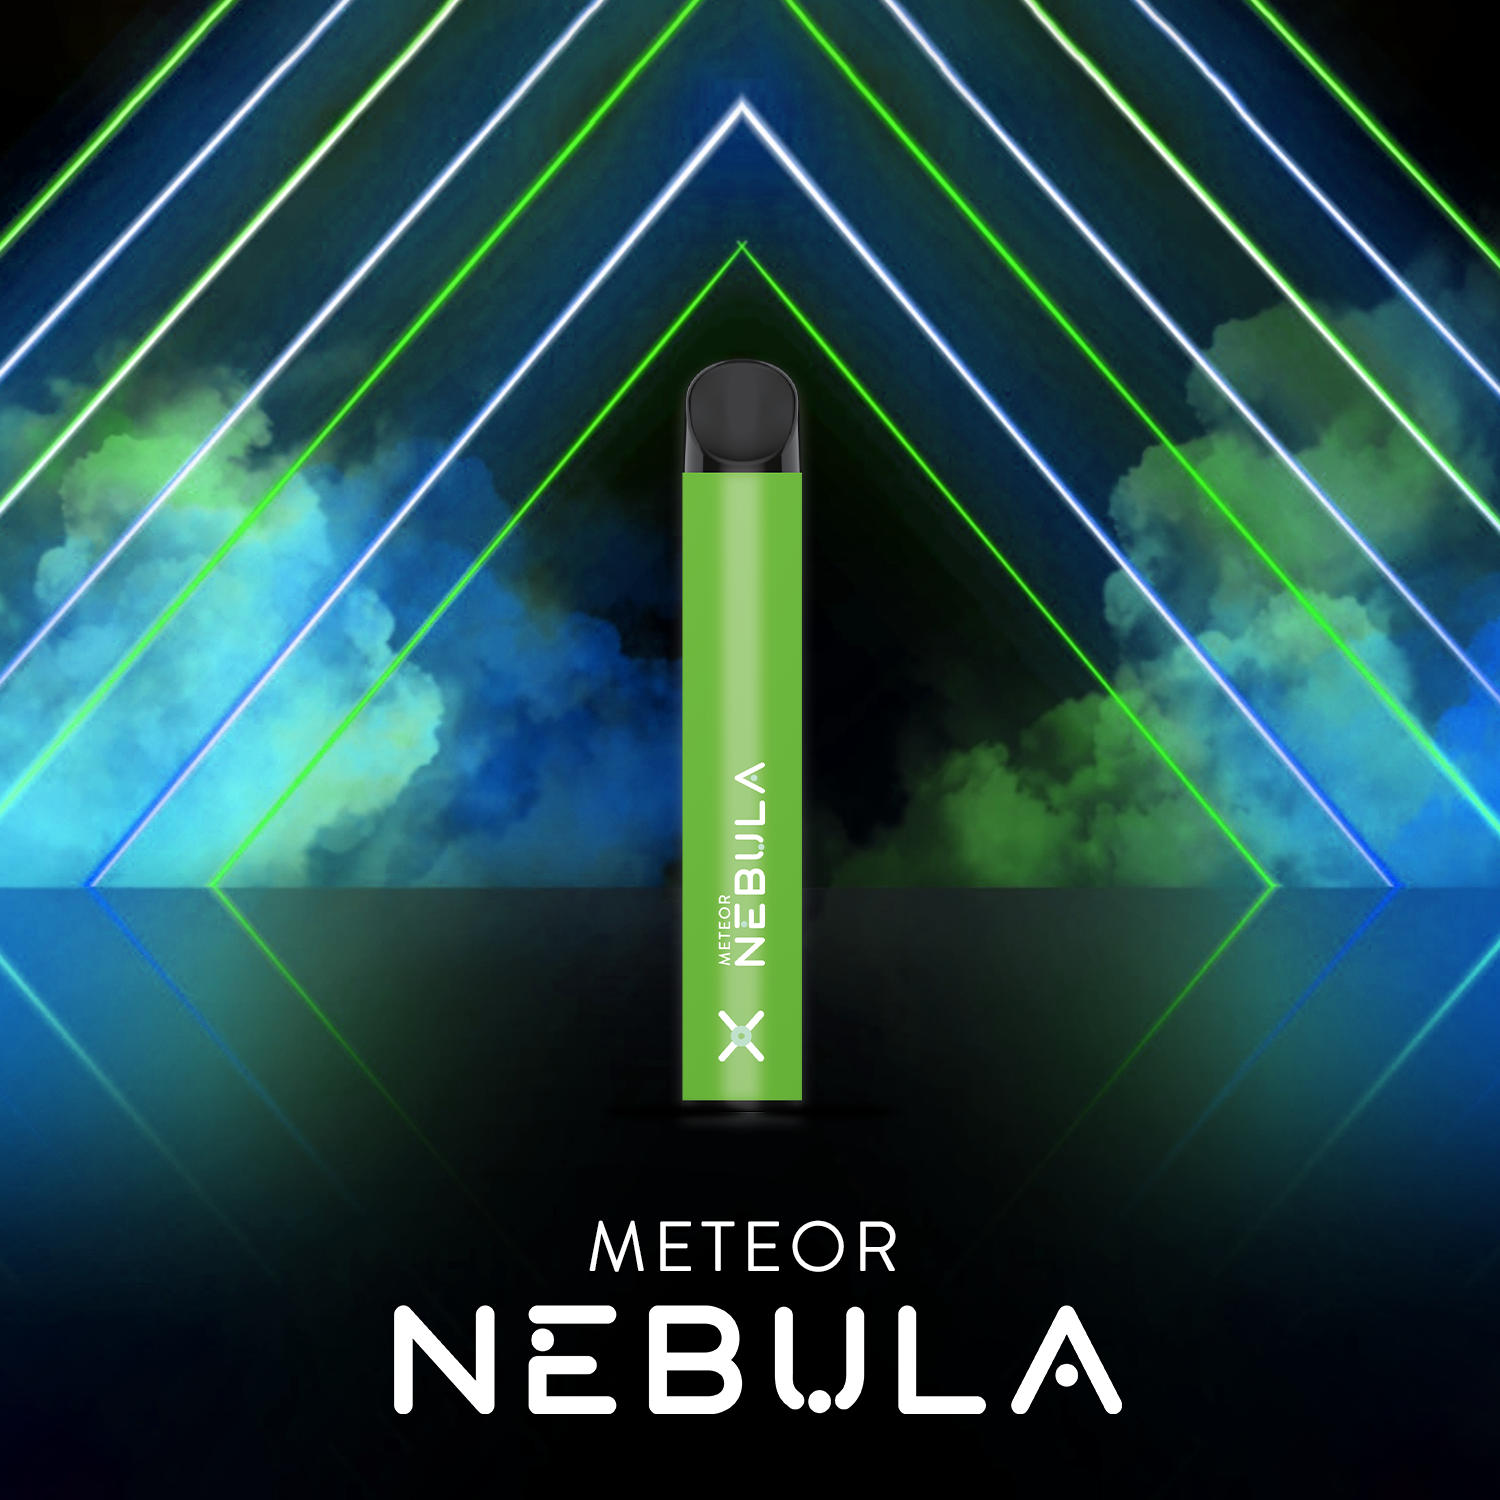 Nebula Meteor